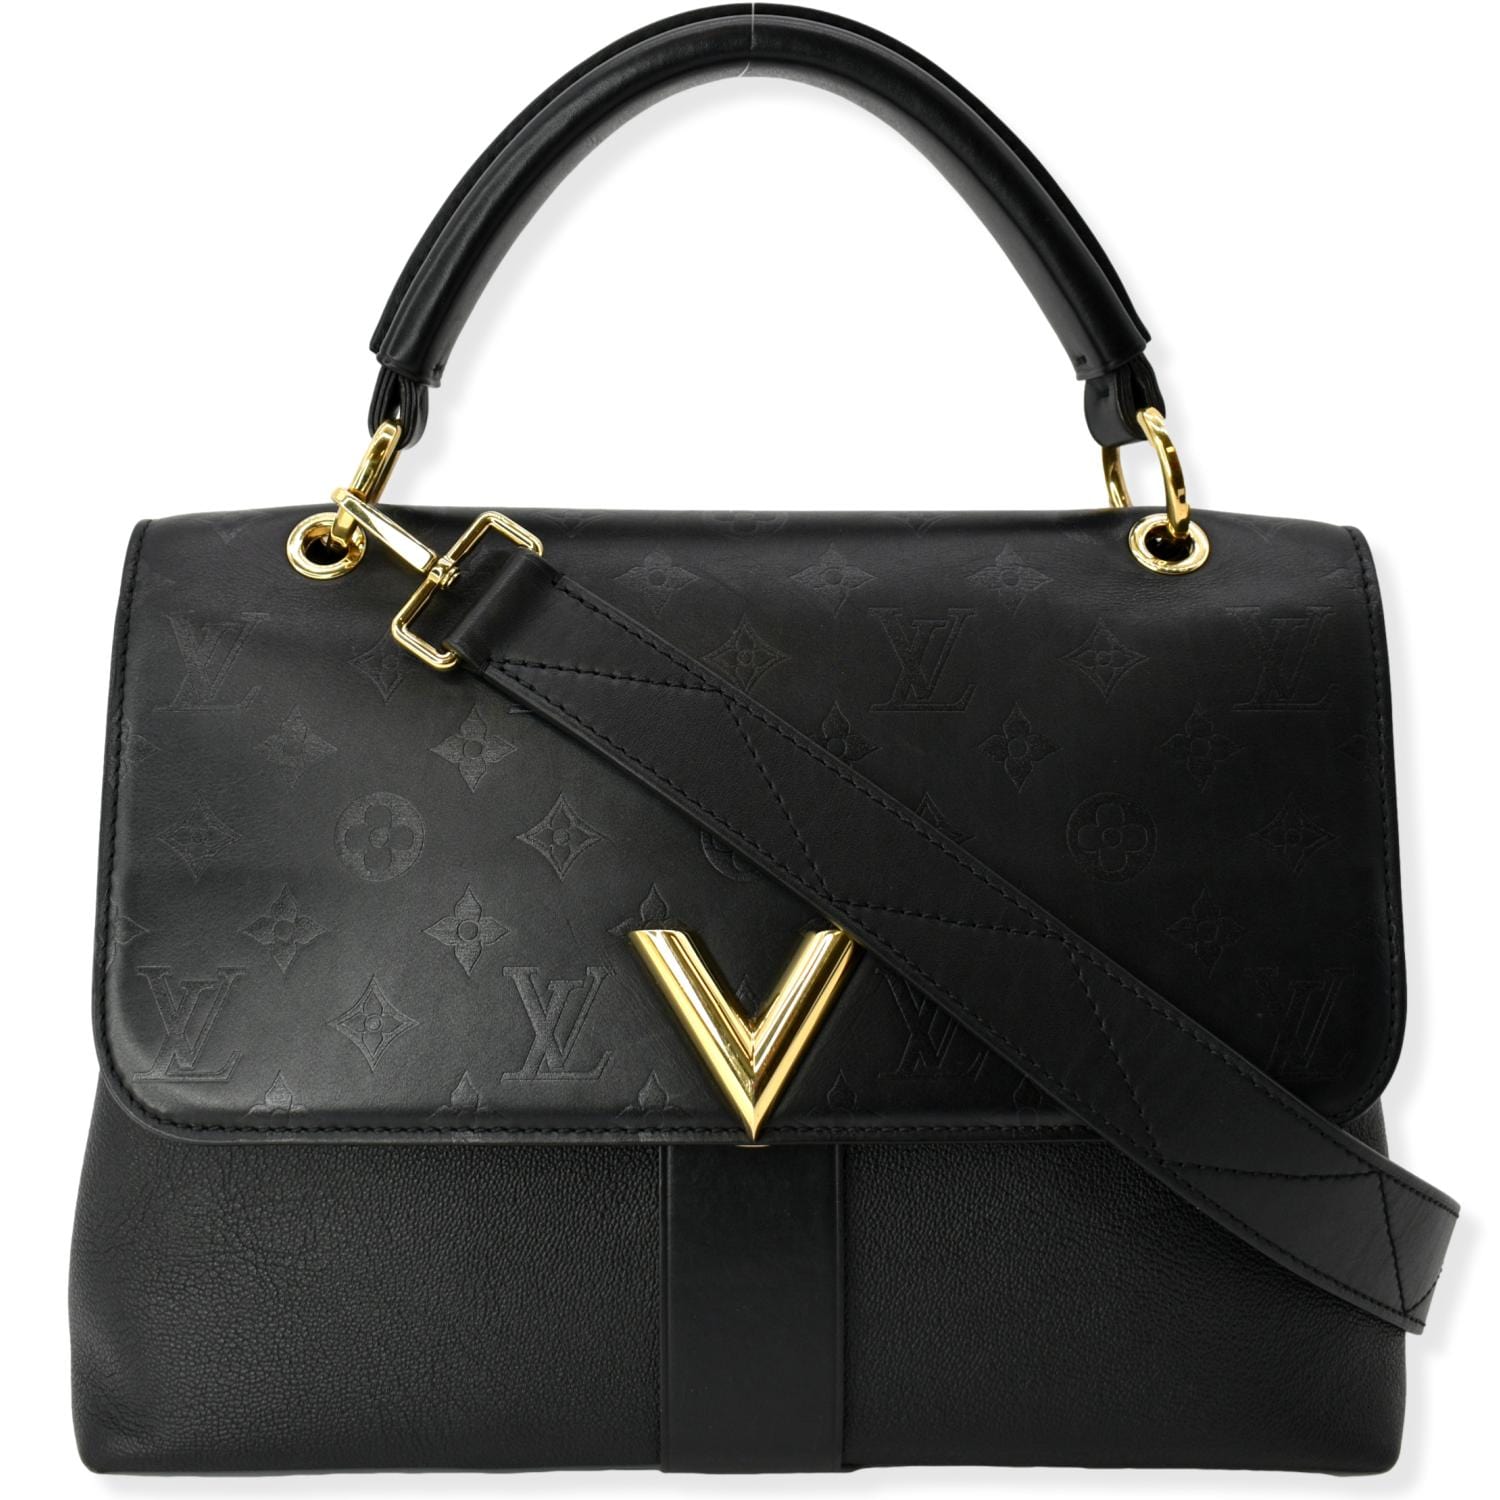 Louis Vuitton Black Leather Handbags & Purses for Women